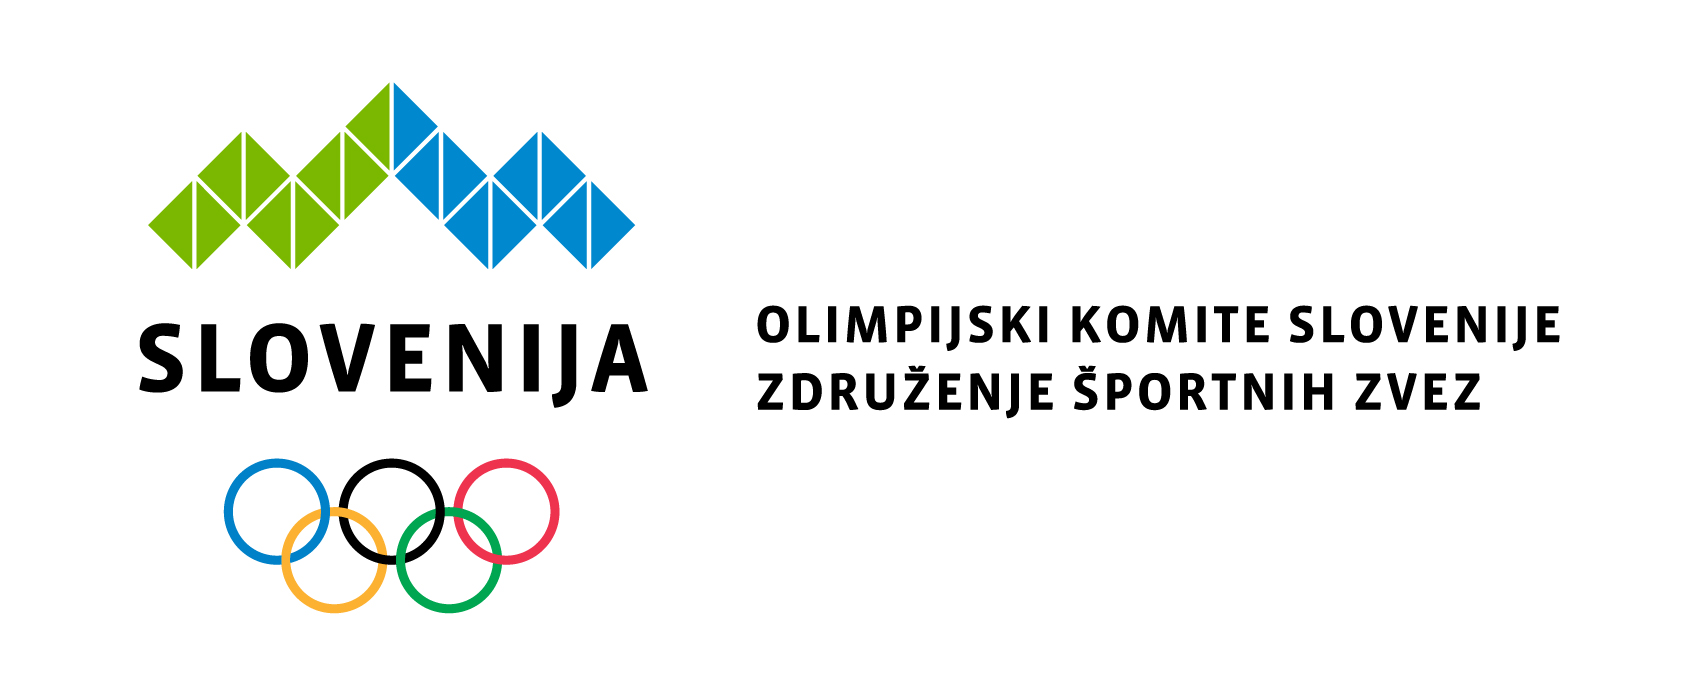 Izvršni odbor OKS imenoval člane olimpijske reprezentance Slovenije